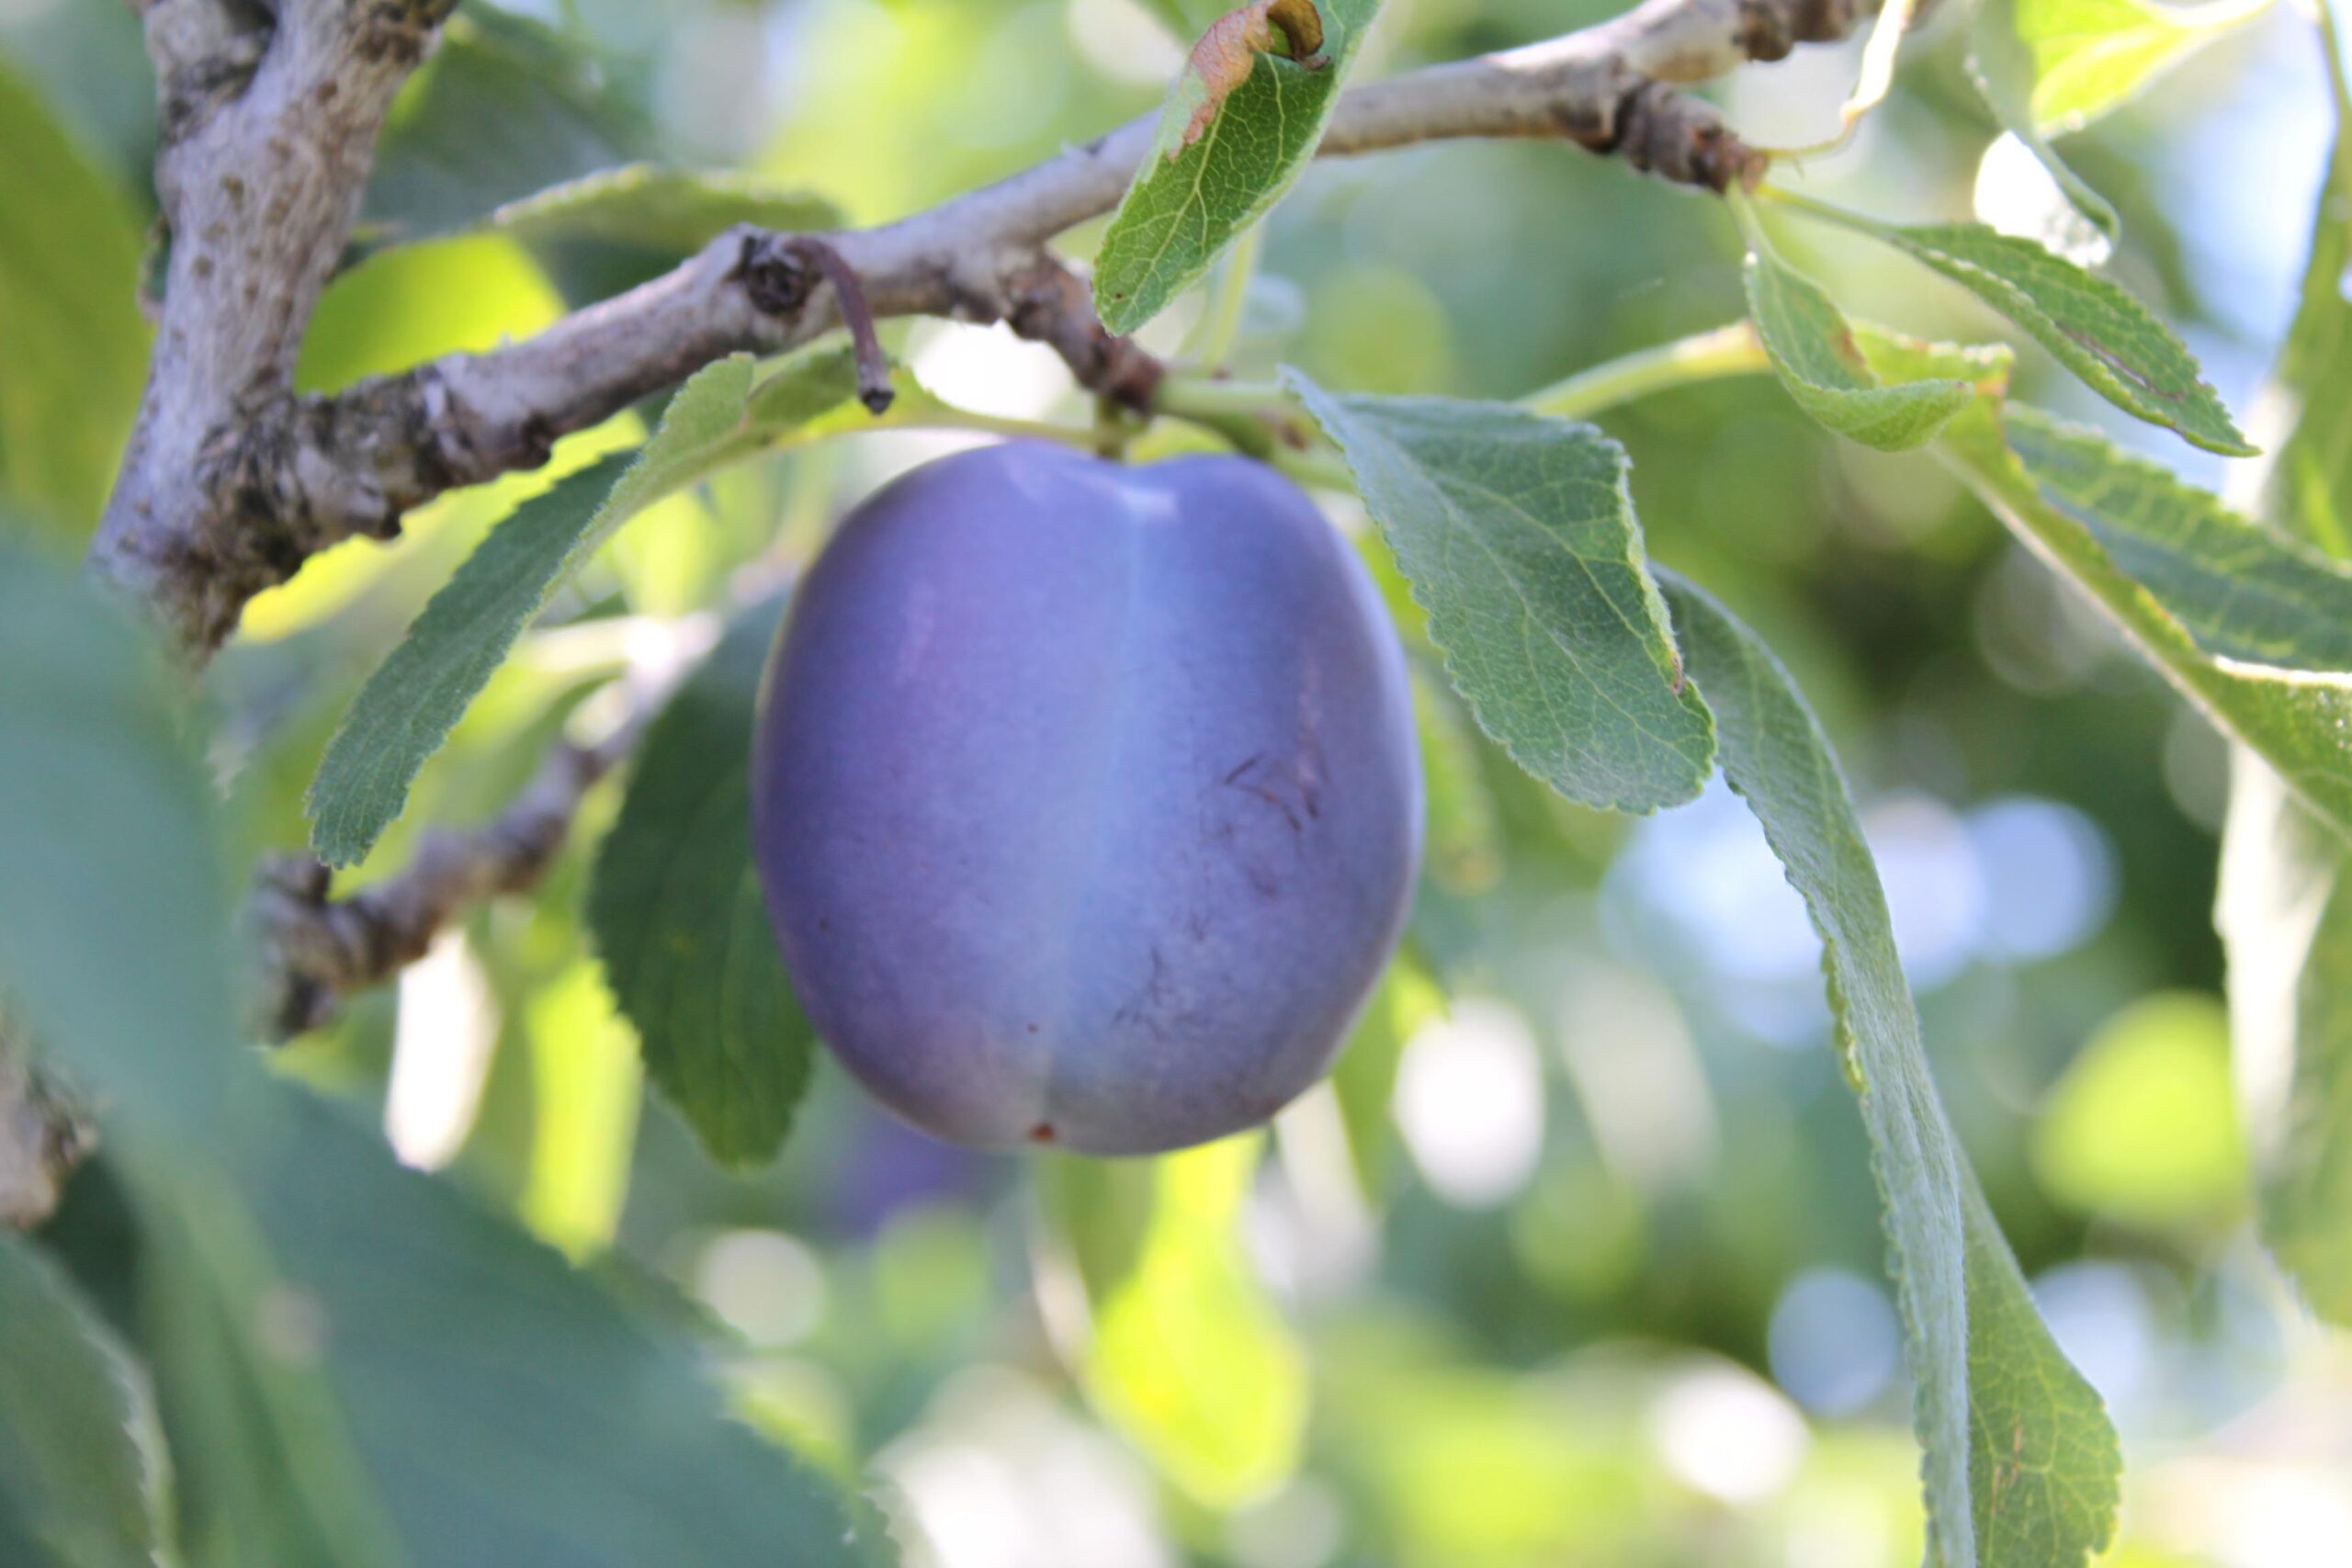 download prune plum